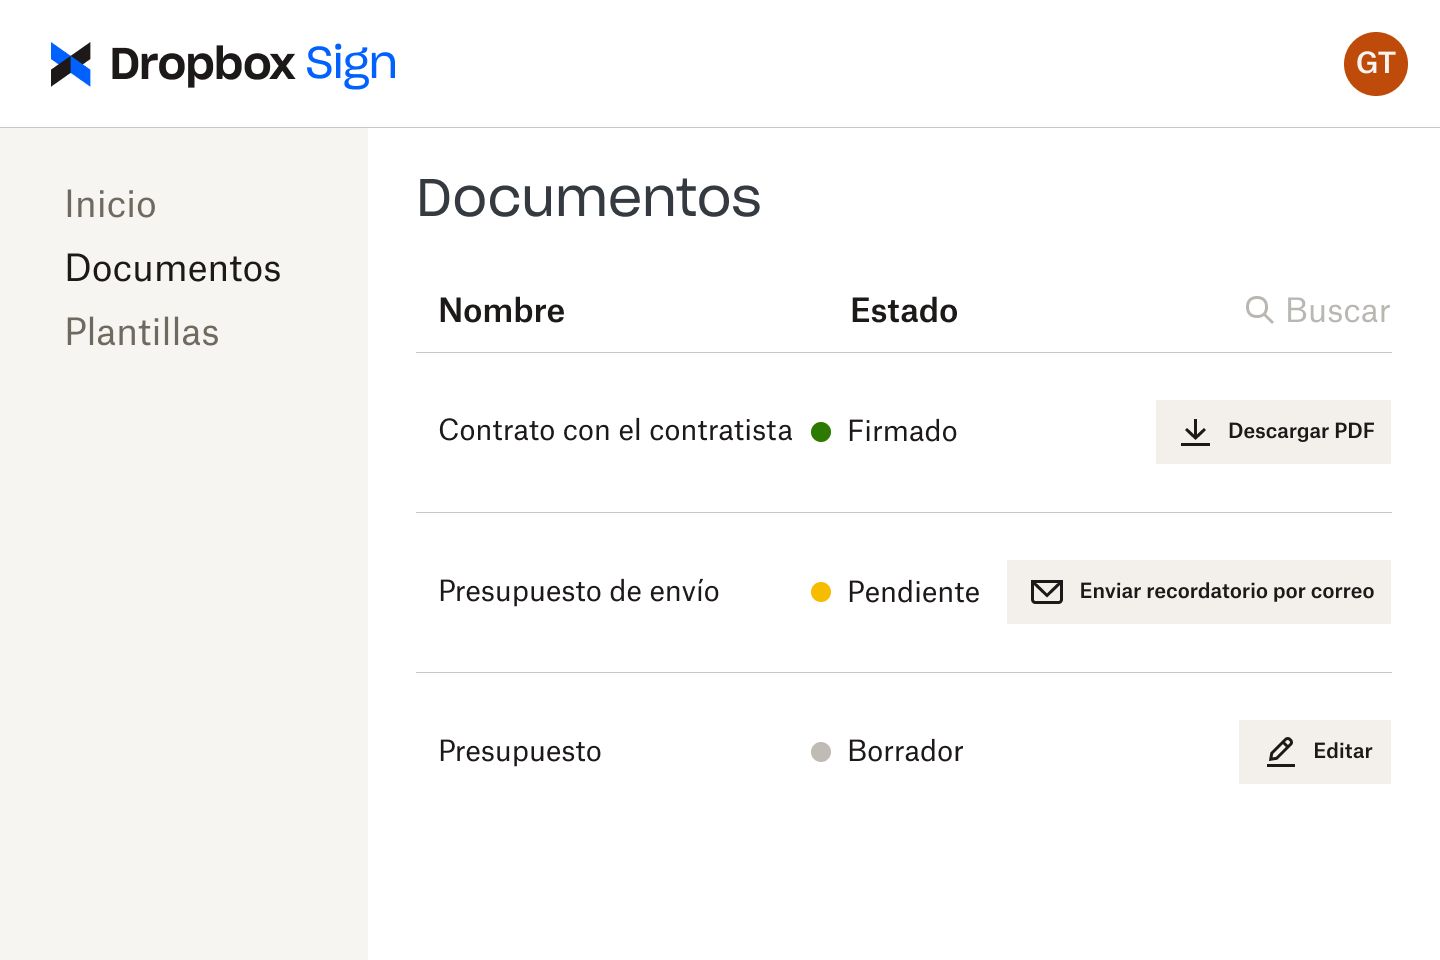 Documentos en la interfaz de Dropbox Sign en varias etapas de revisión